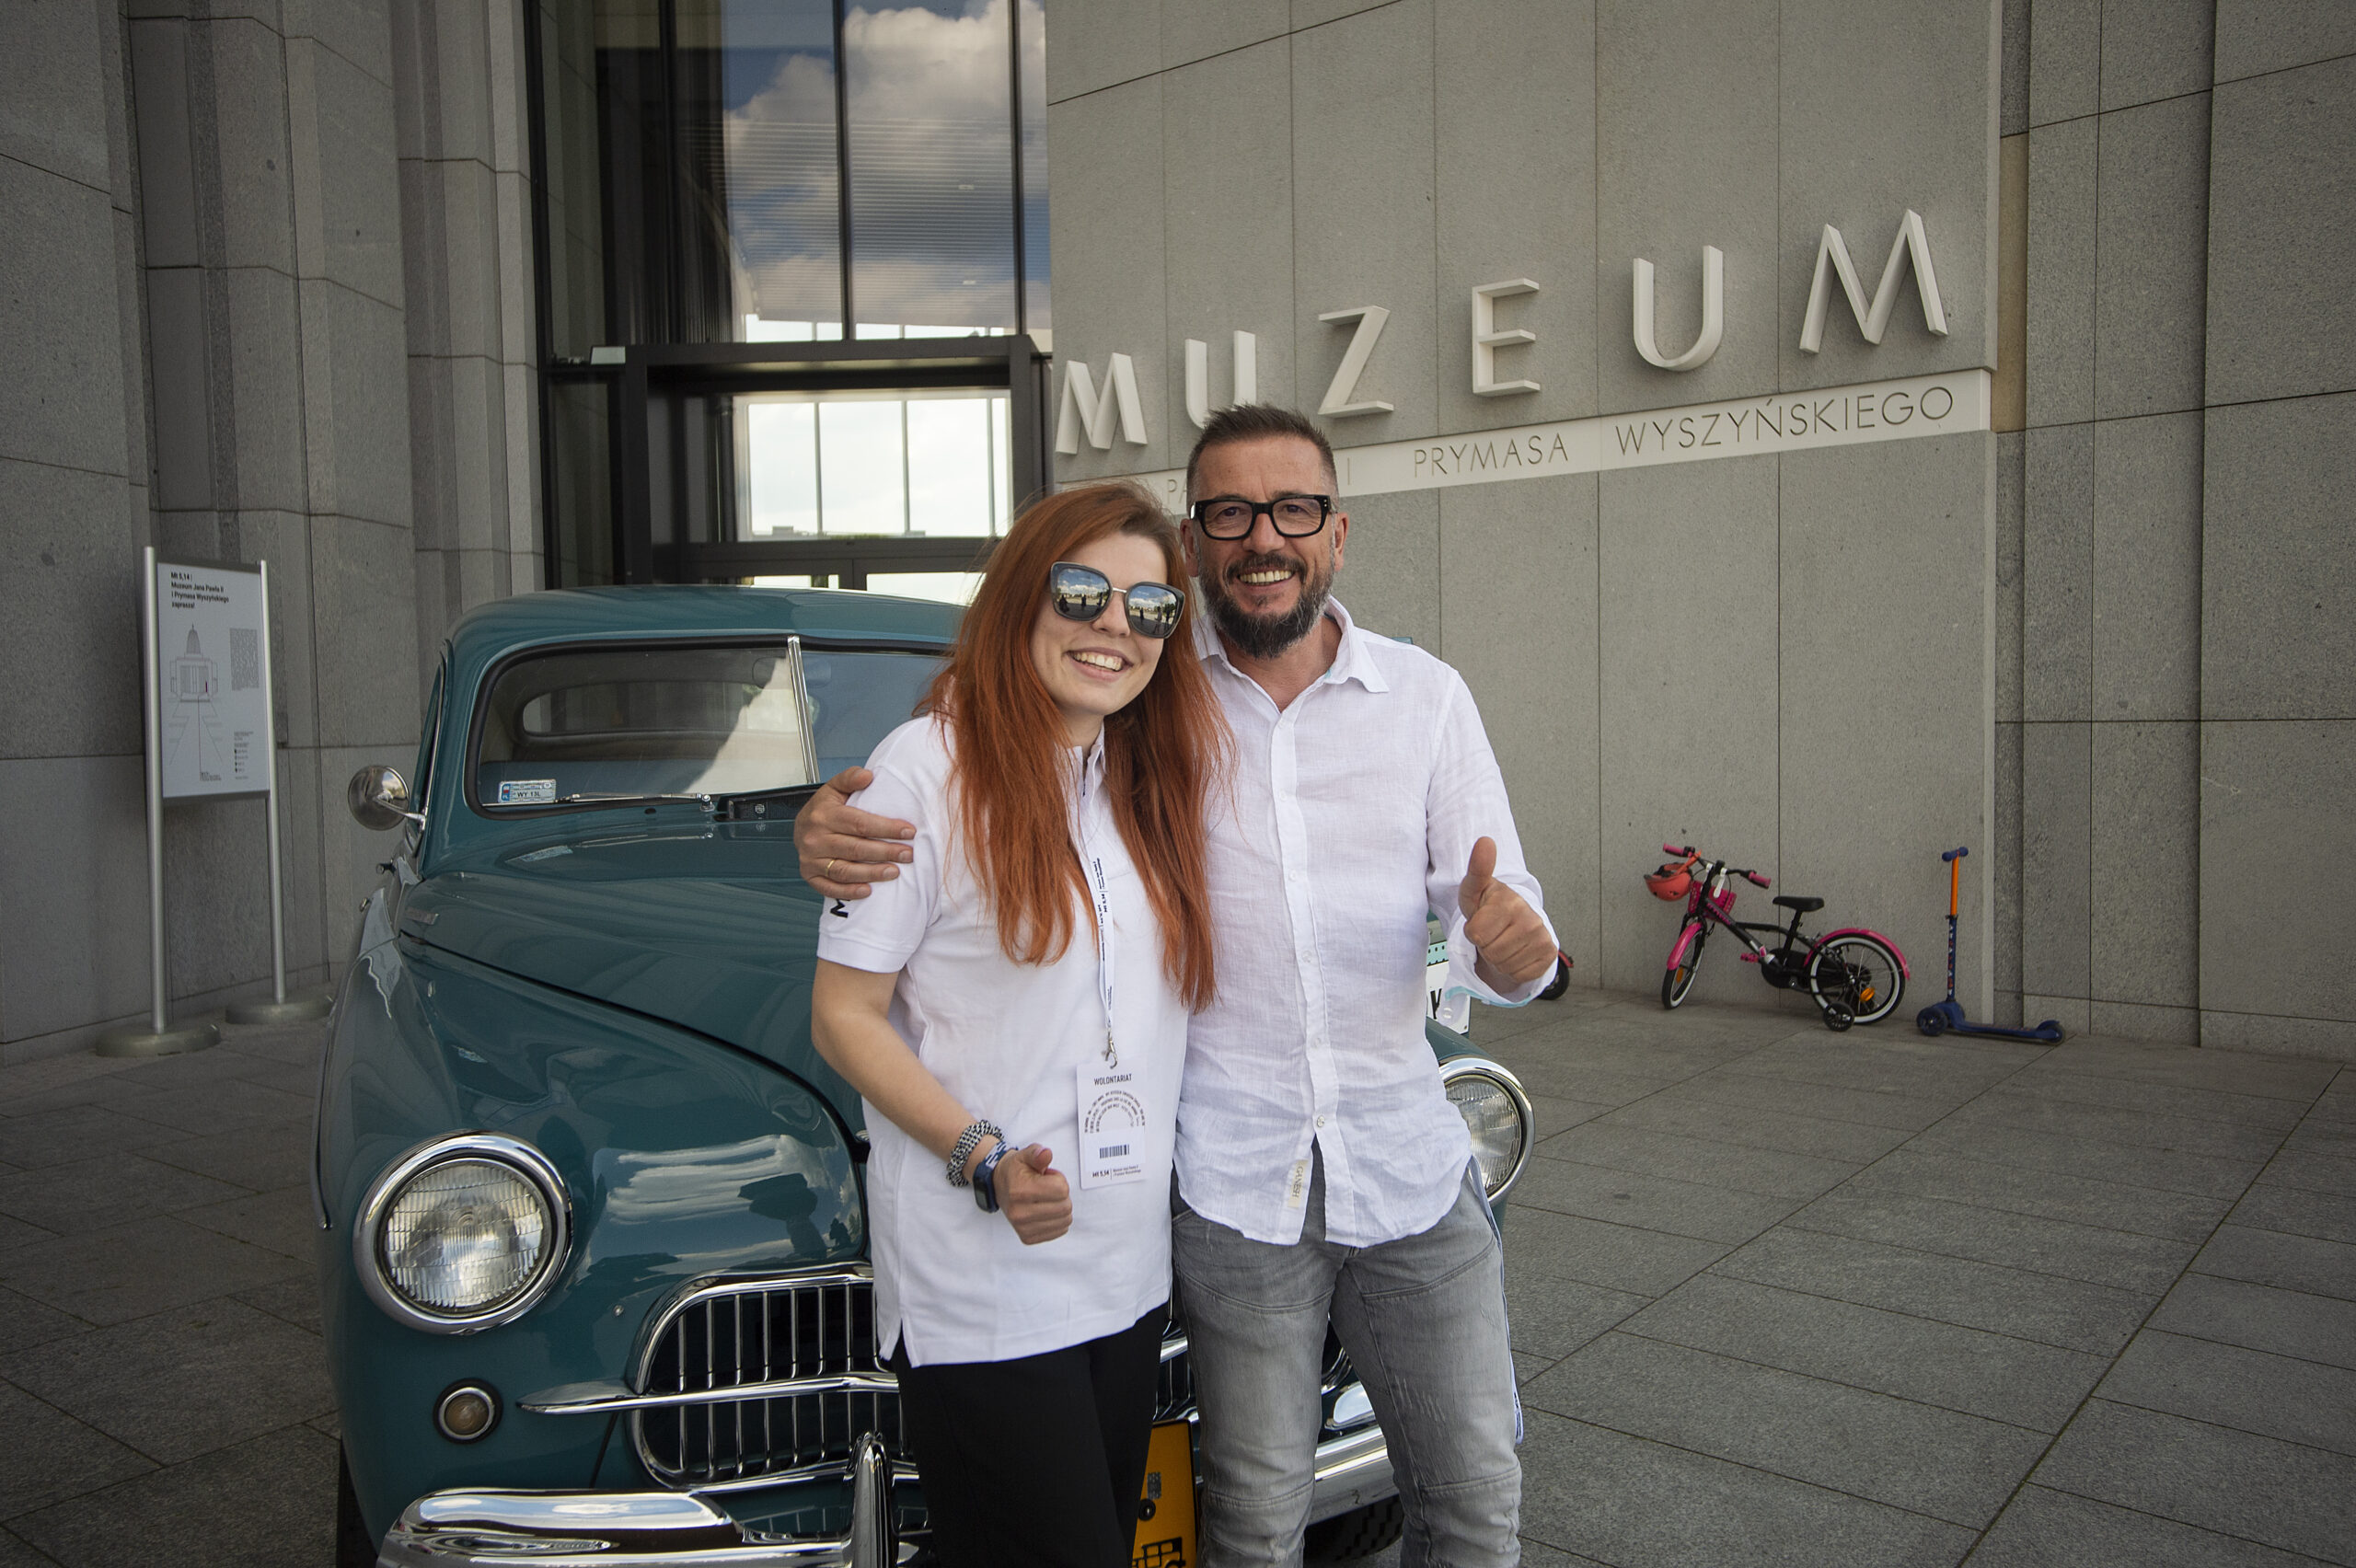 Slajd: Kobieta, mężczyzna w białych koszulach uśmiechnięci. Stoją przed samochodem, w tle na murze napis Muzeum.